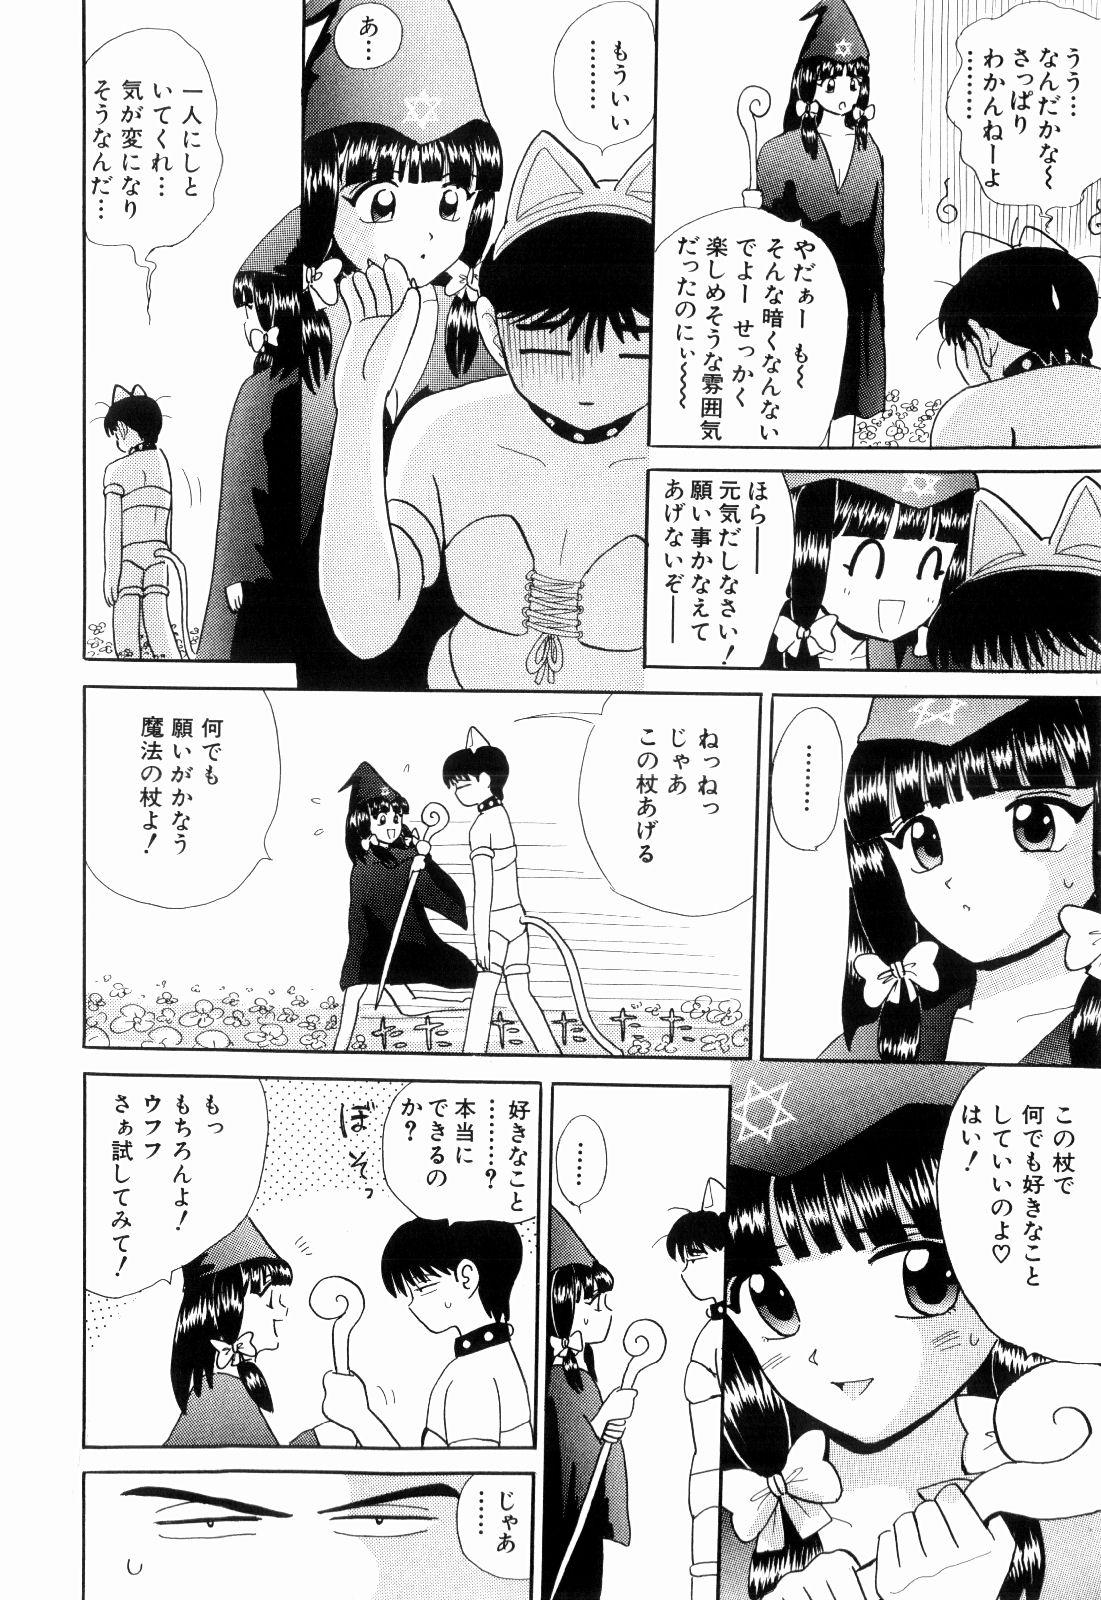 Online Kenjiro Kakimoto - Futari Kurashi 11 Twistys - Page 8